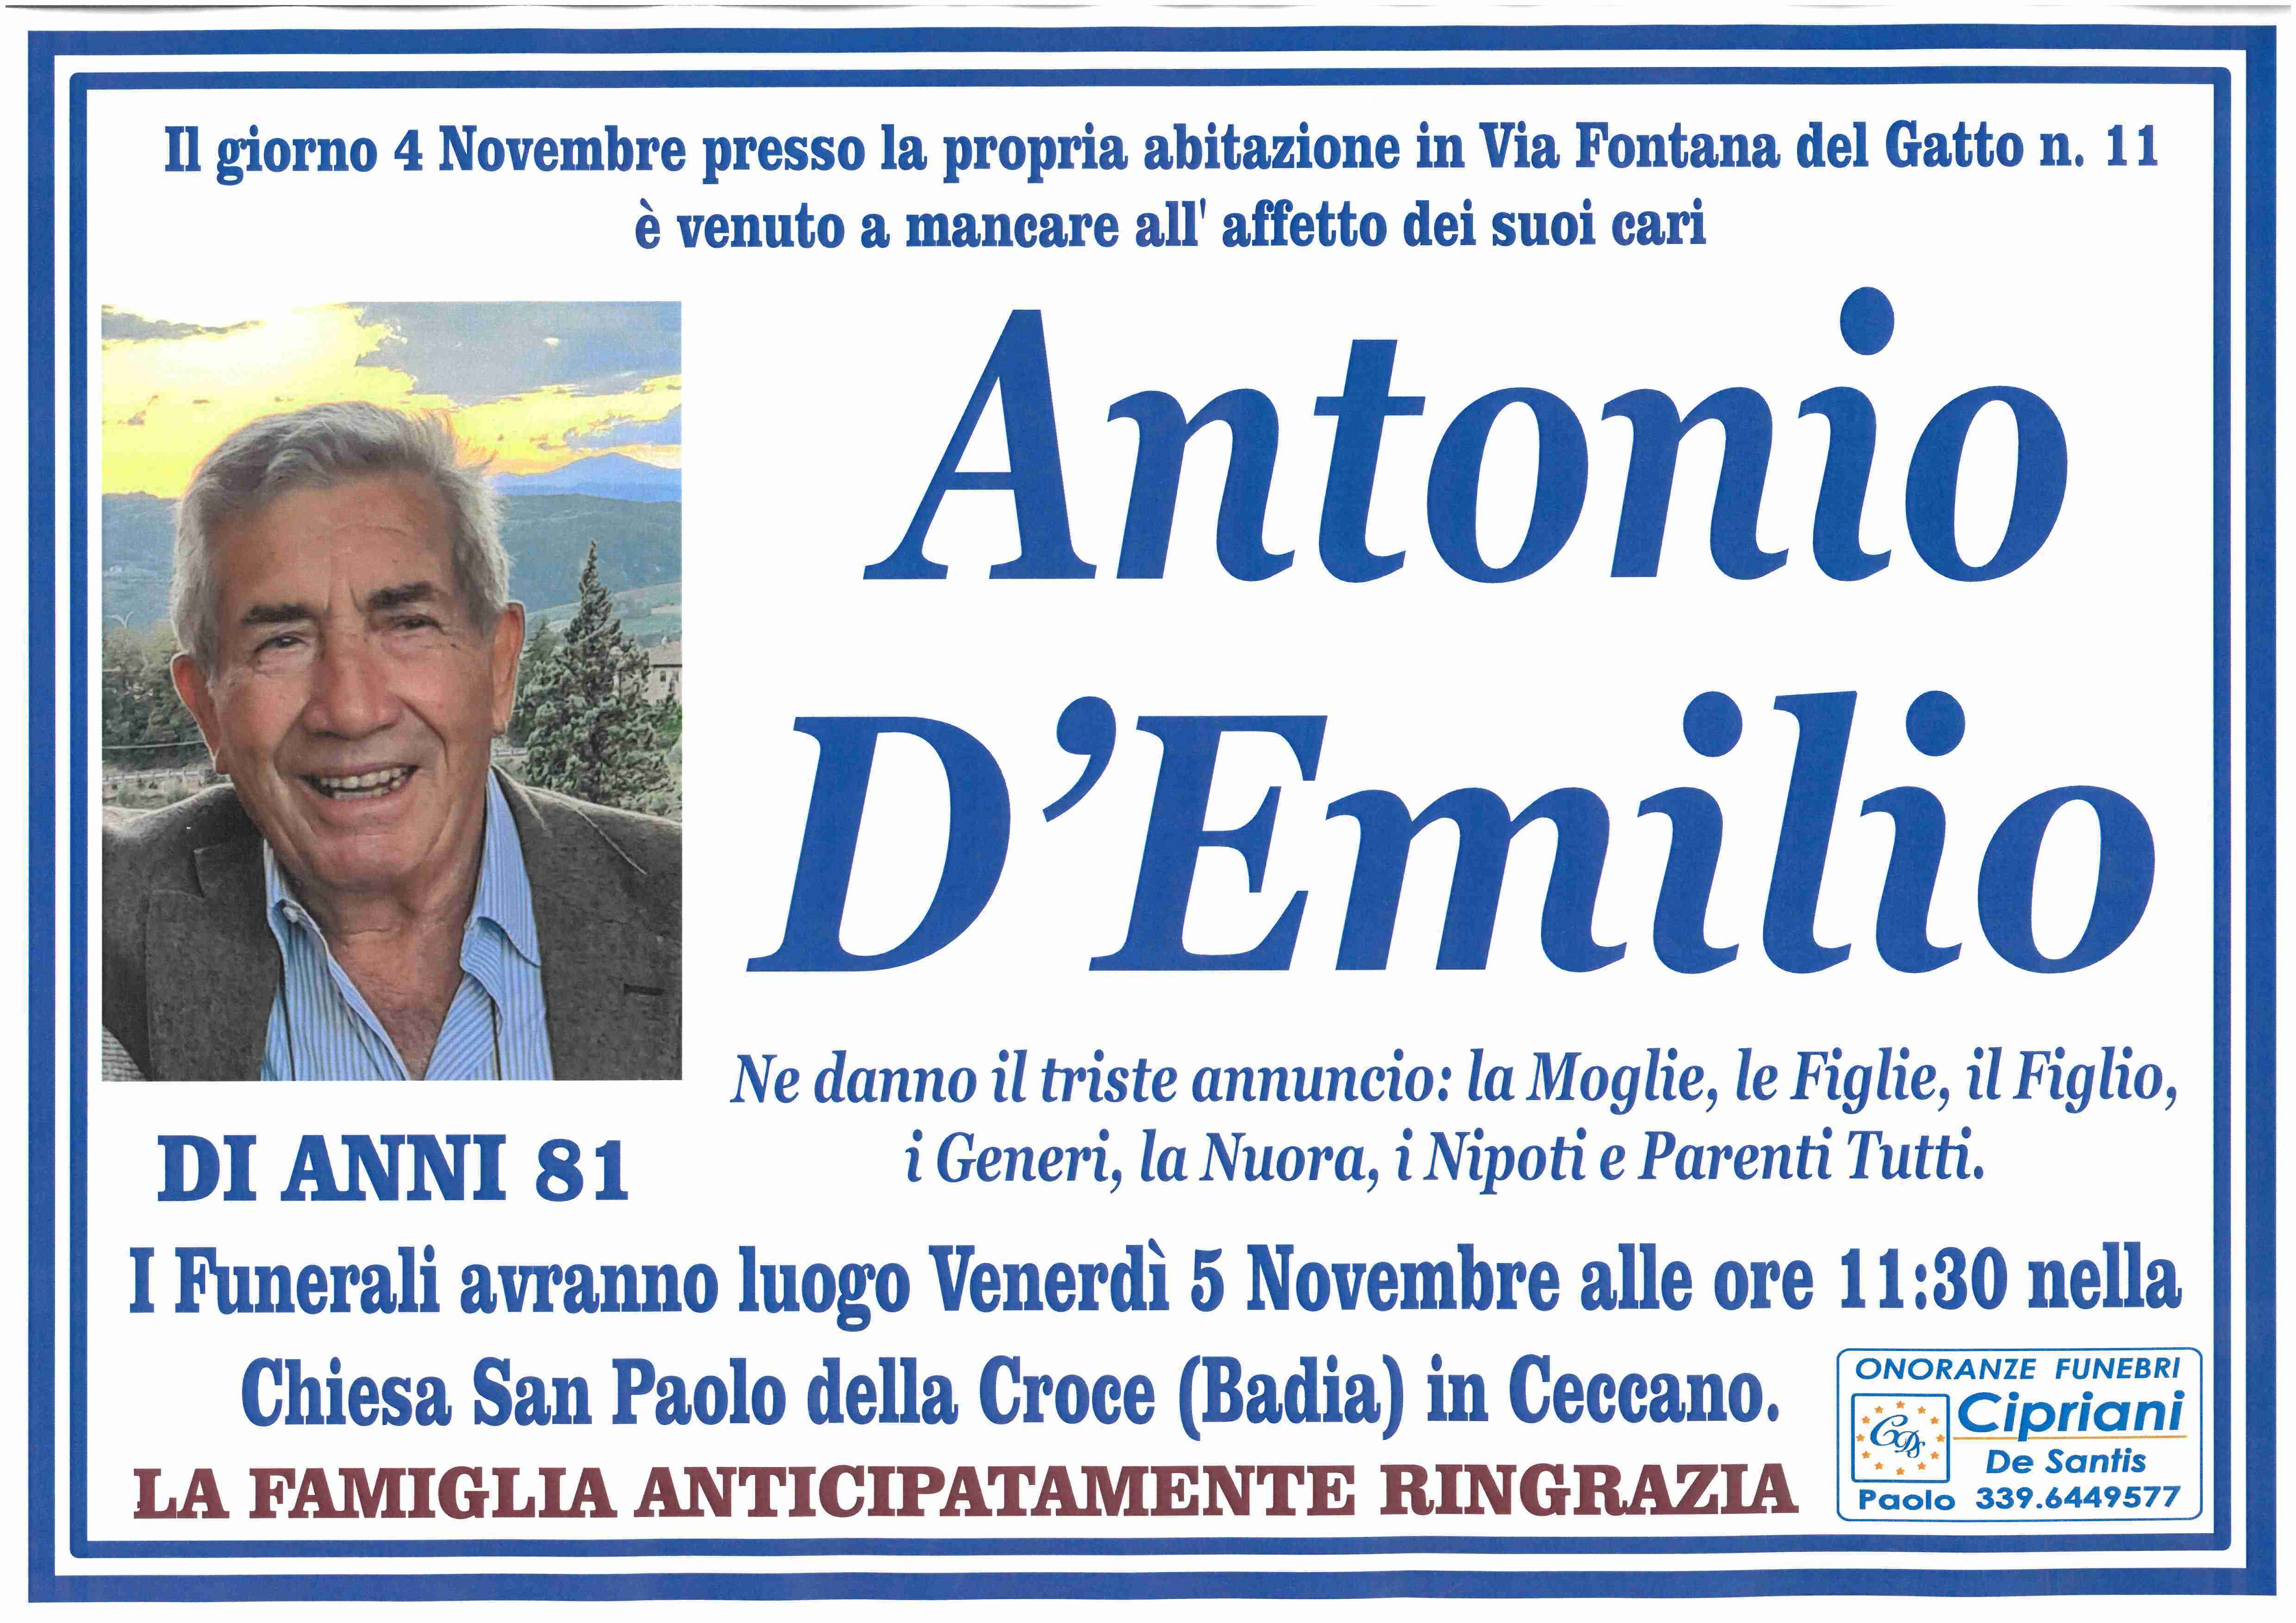 Antonio D'Emilio